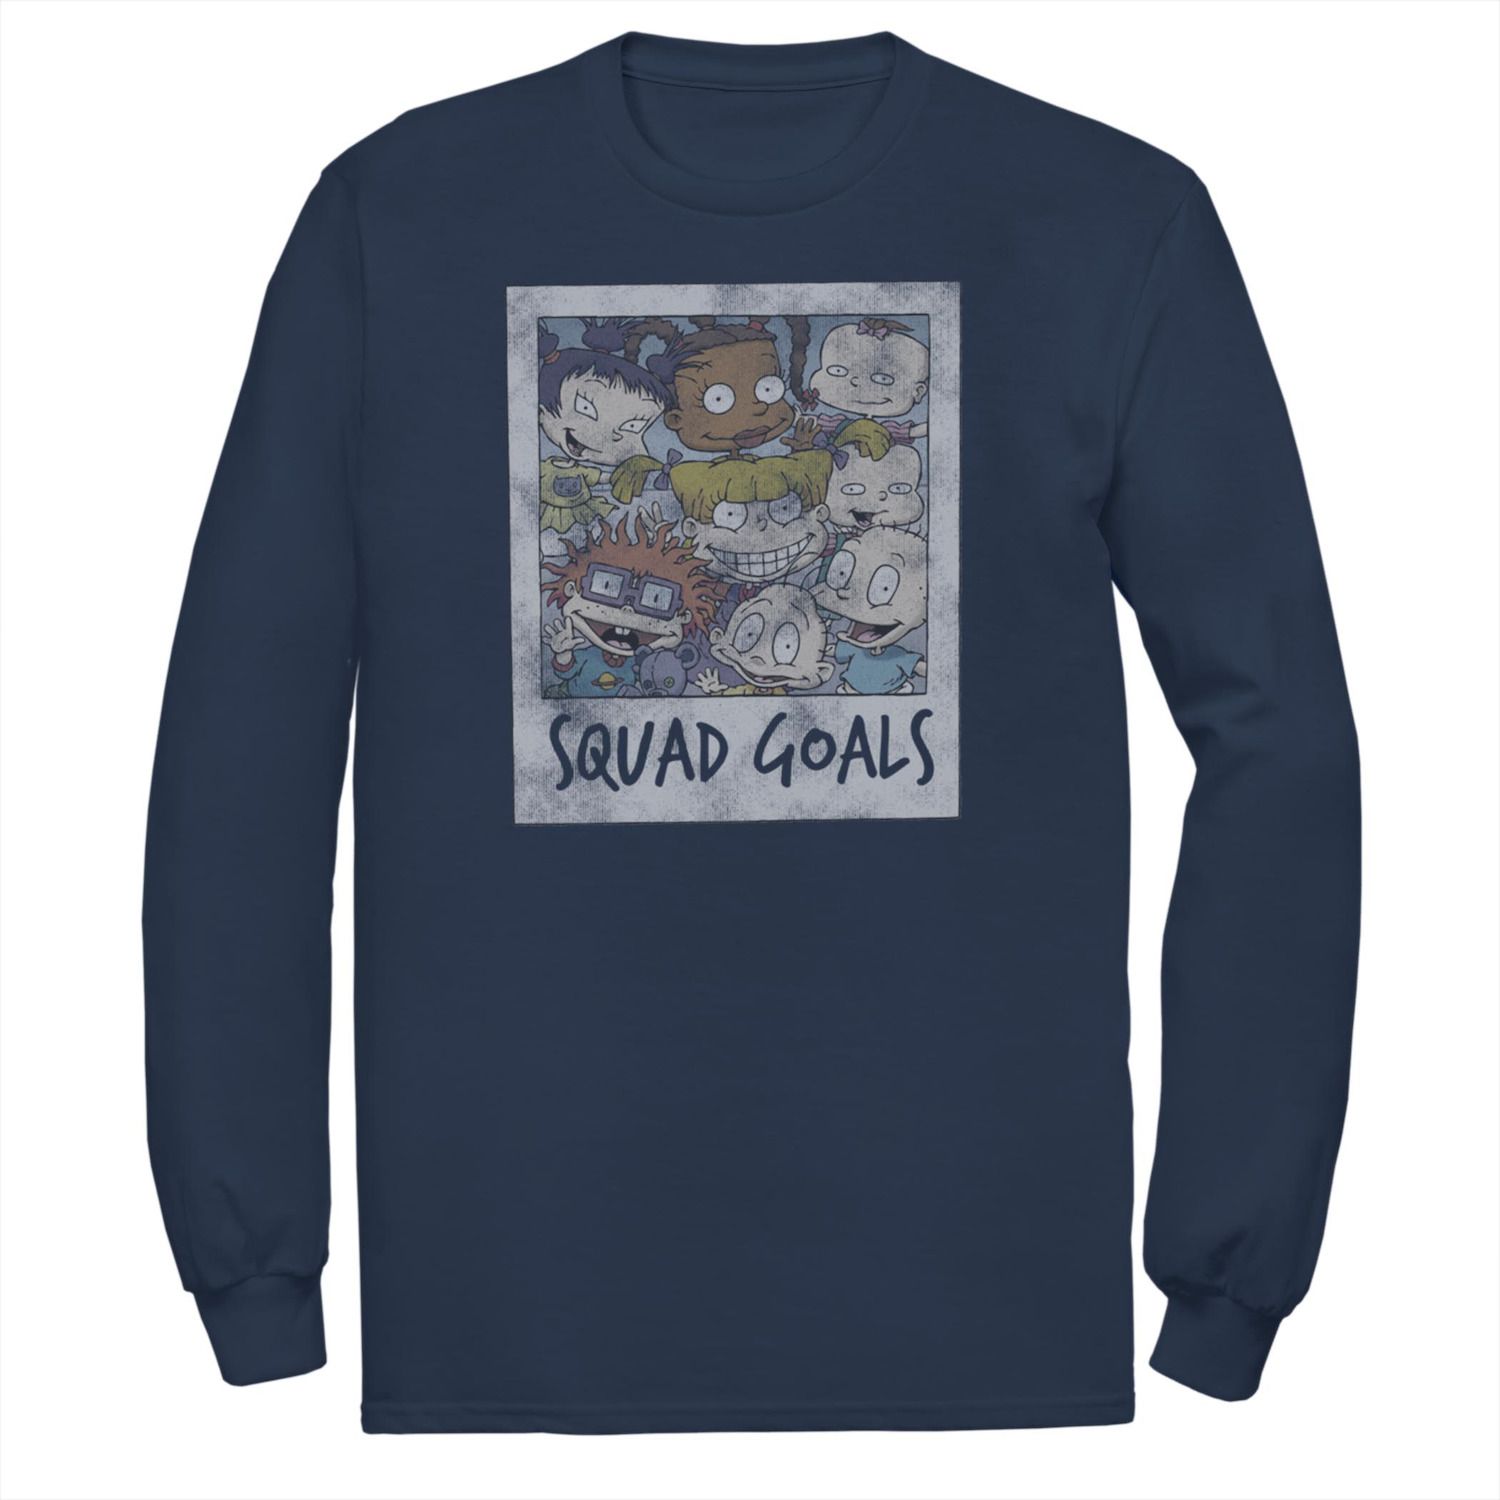 Мужская футболка Rugrats Squad Goals с длинными рукавами и фотографией Licensed Character